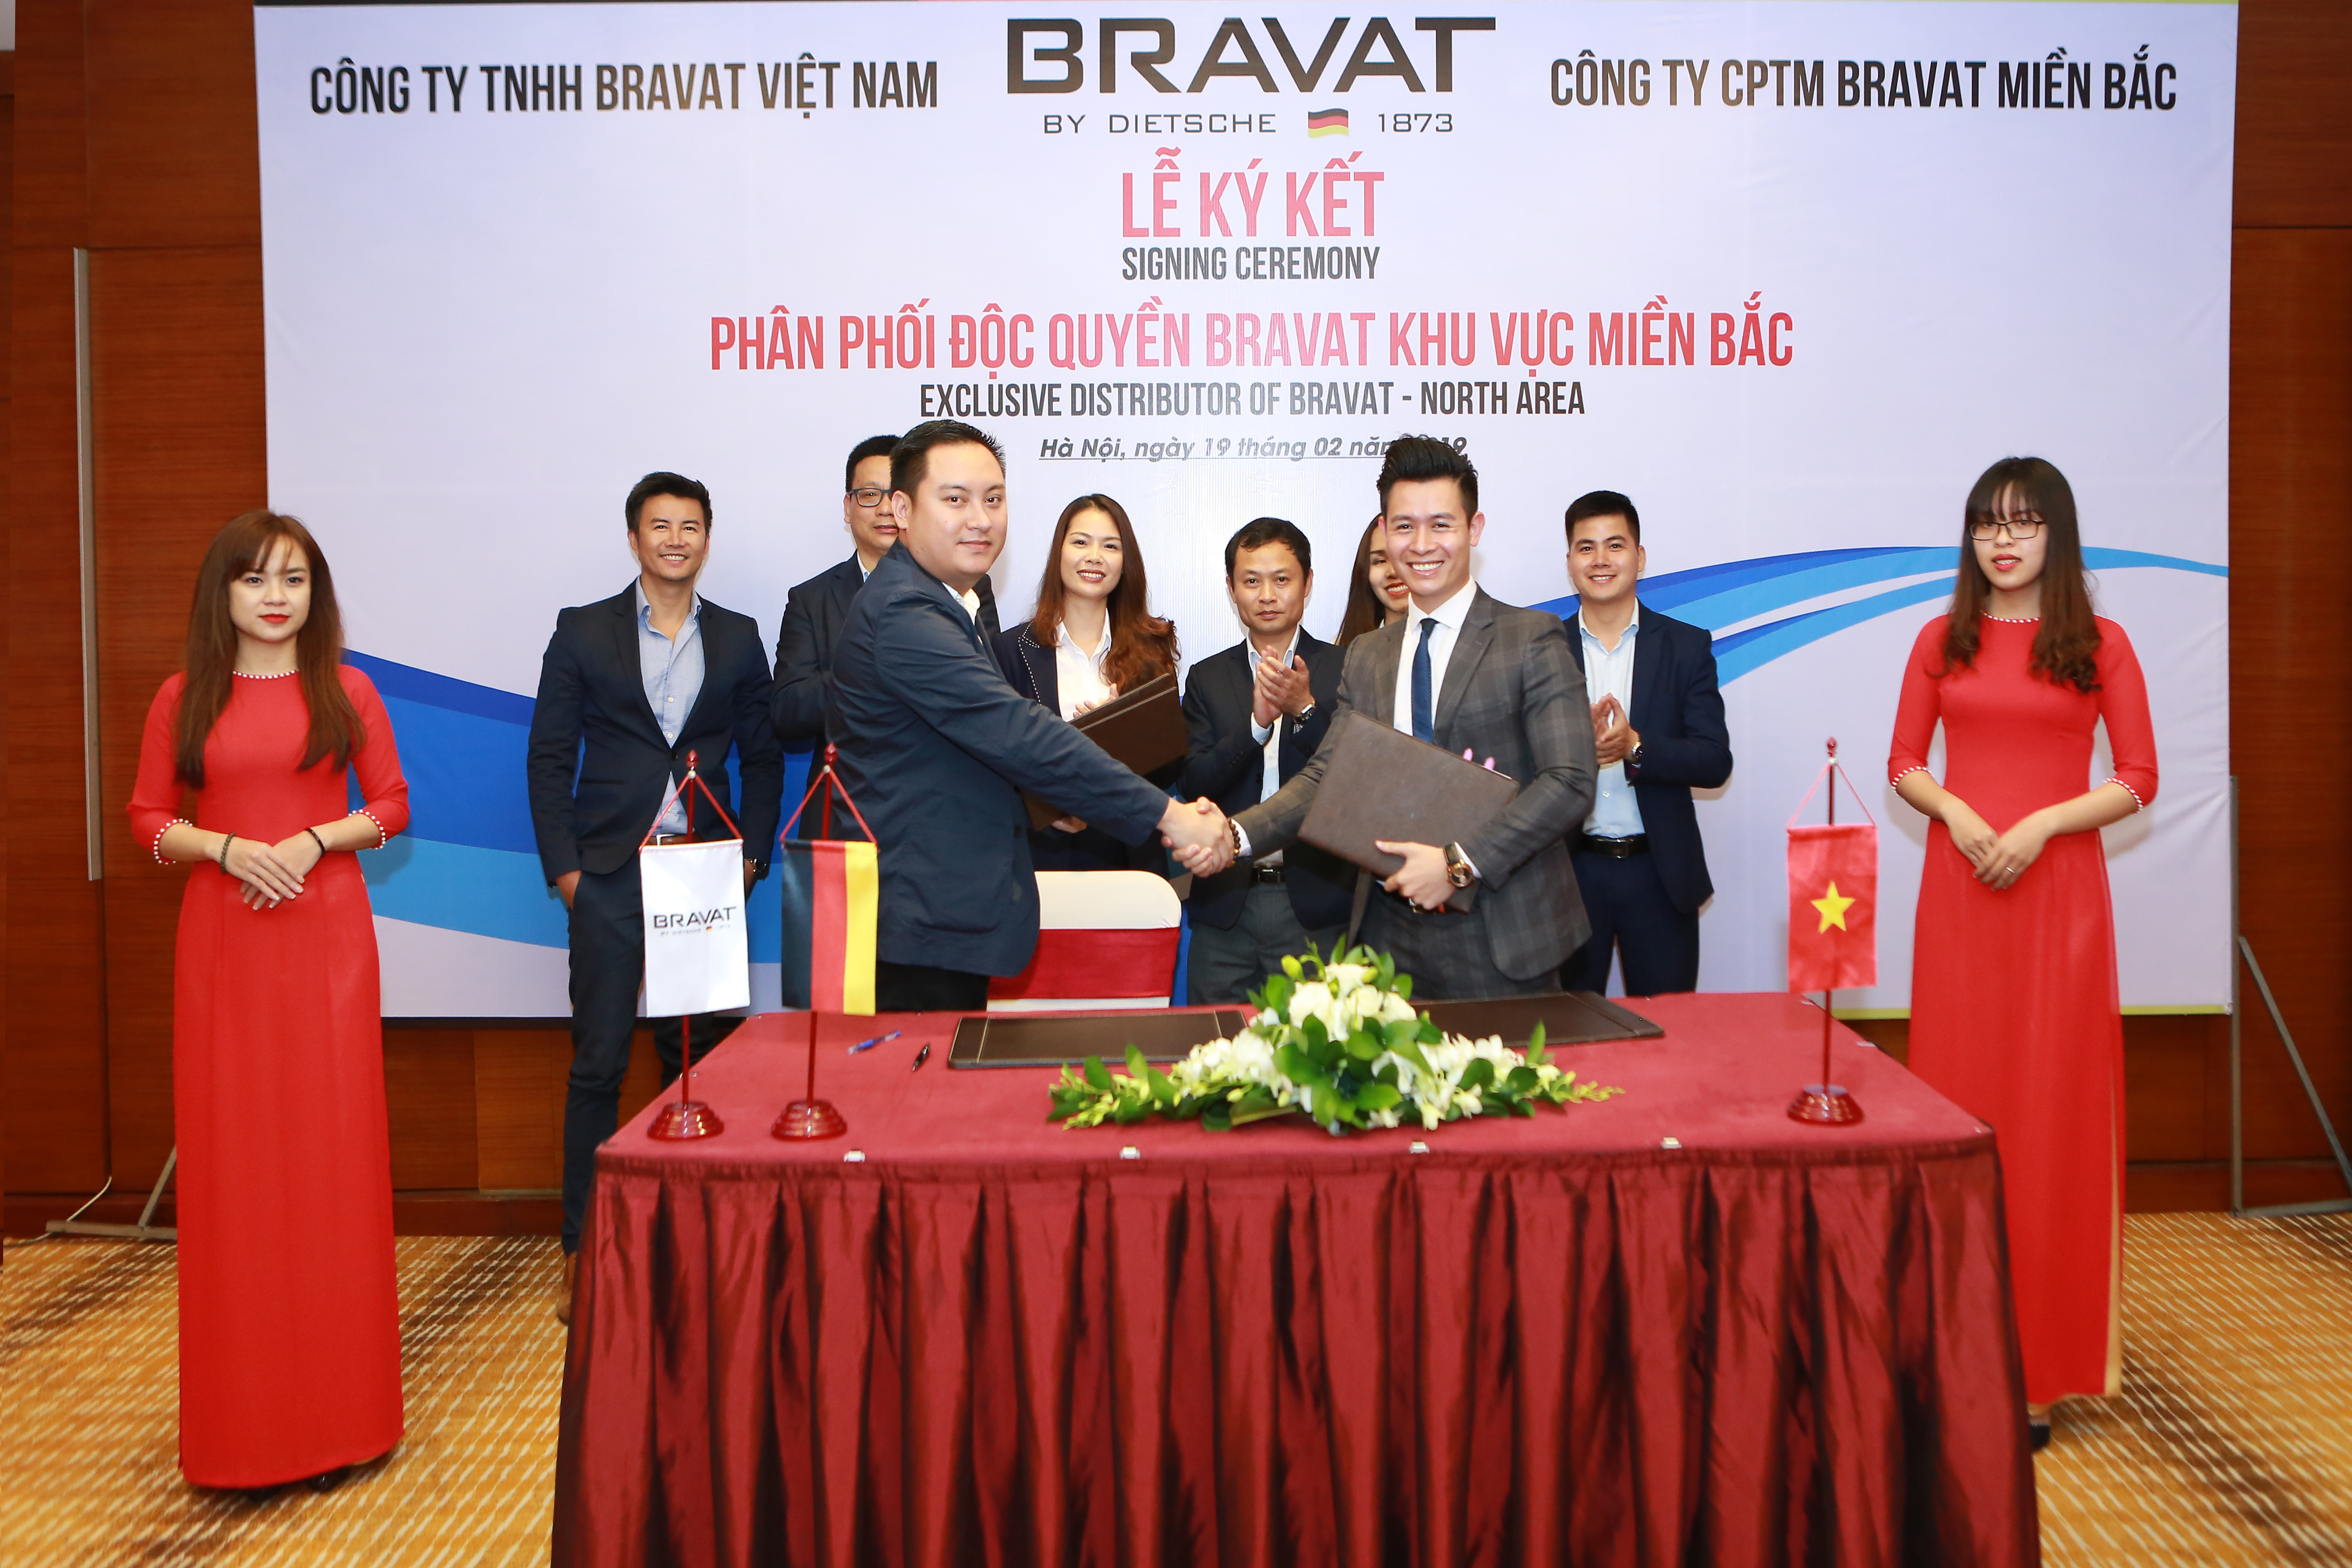  Lễ phân phối độc quyền giữa Bravat Việt Nam và Bravat Miền Bắc diễn ra thành công tốt đẹp.